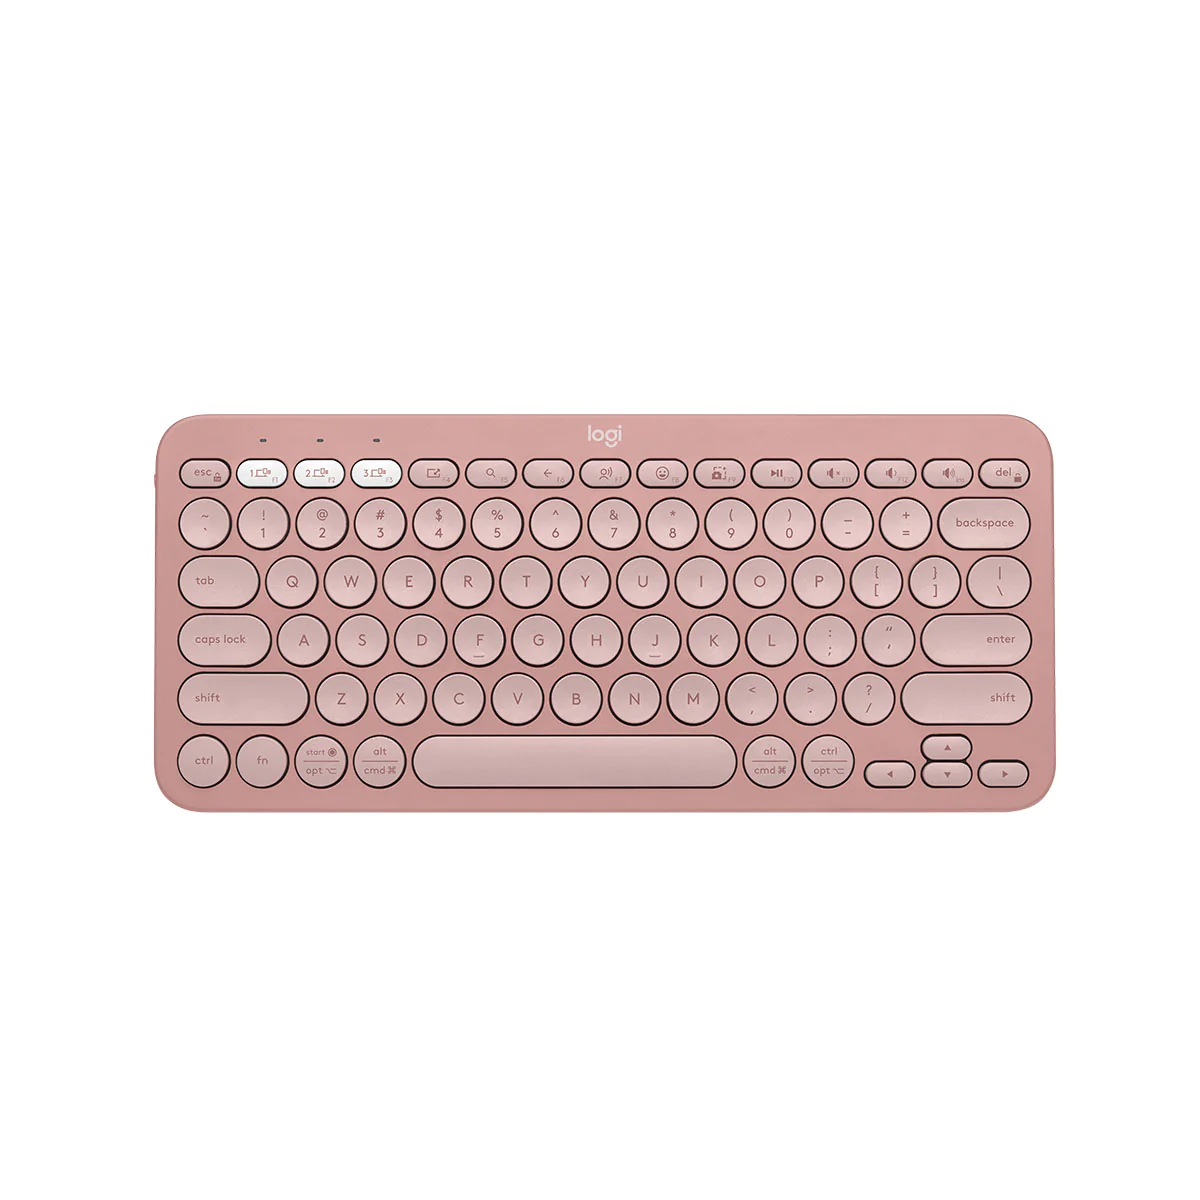 Logitech Pebble Keys 2 K380s 美式英文跨平台藍牙鍵盤 (玫瑰粉) #920-011755